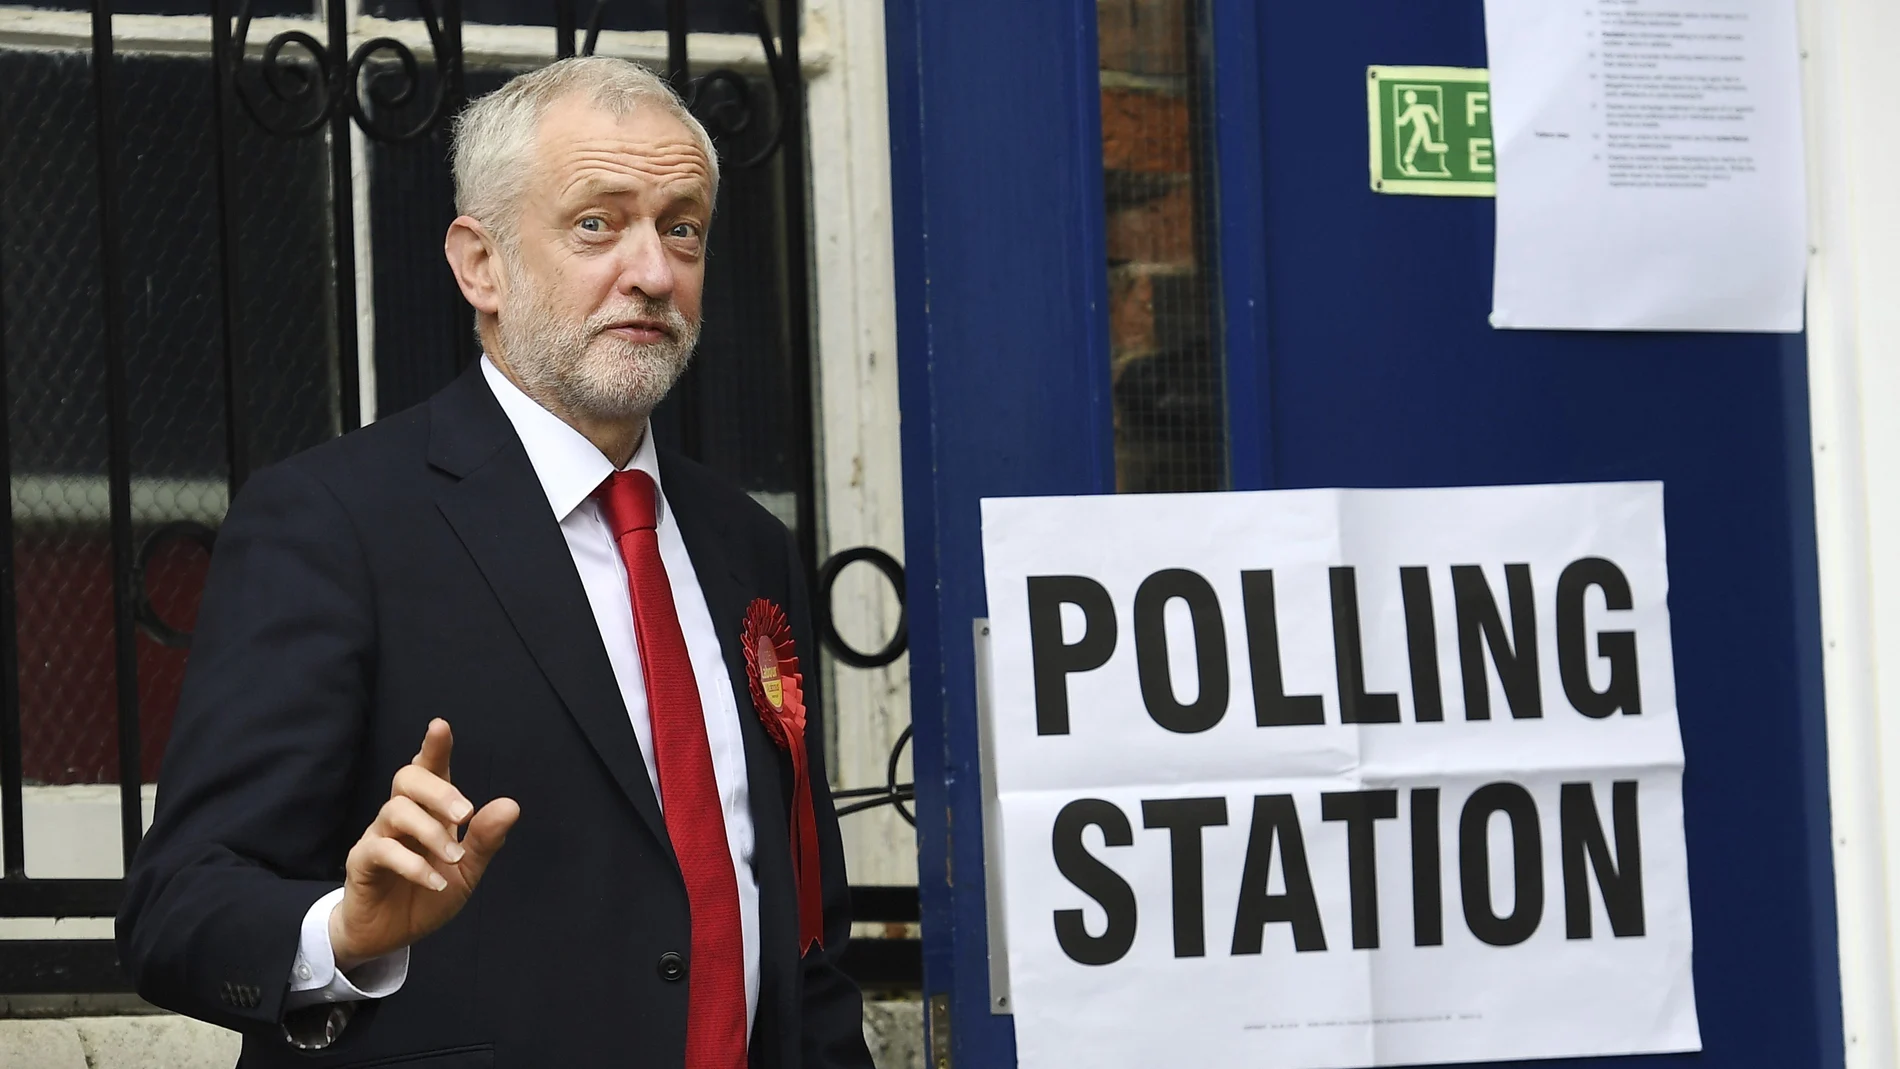 El líder laborista Jeremy Corbyn saluda antes de ejercer su derecho al voto 